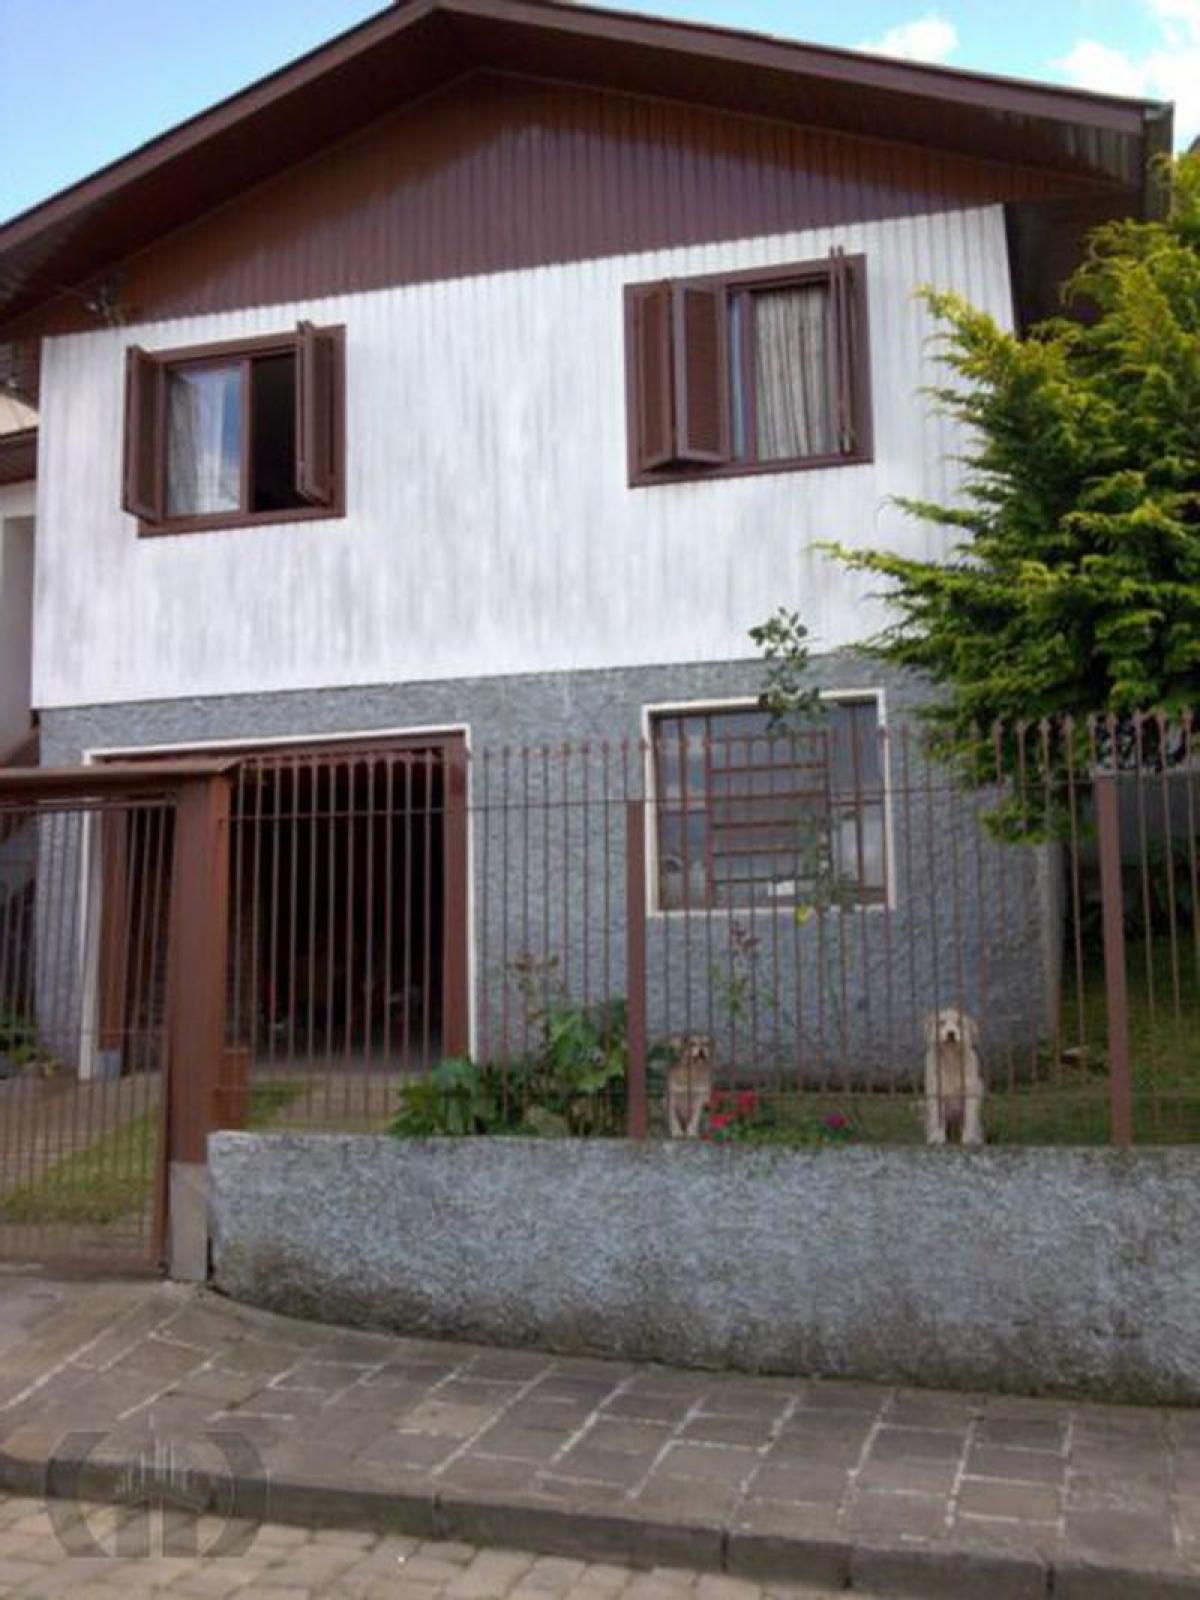 Picture of Home For Sale in Caxias Do Sul, Rio Grande do Sul, Brazil